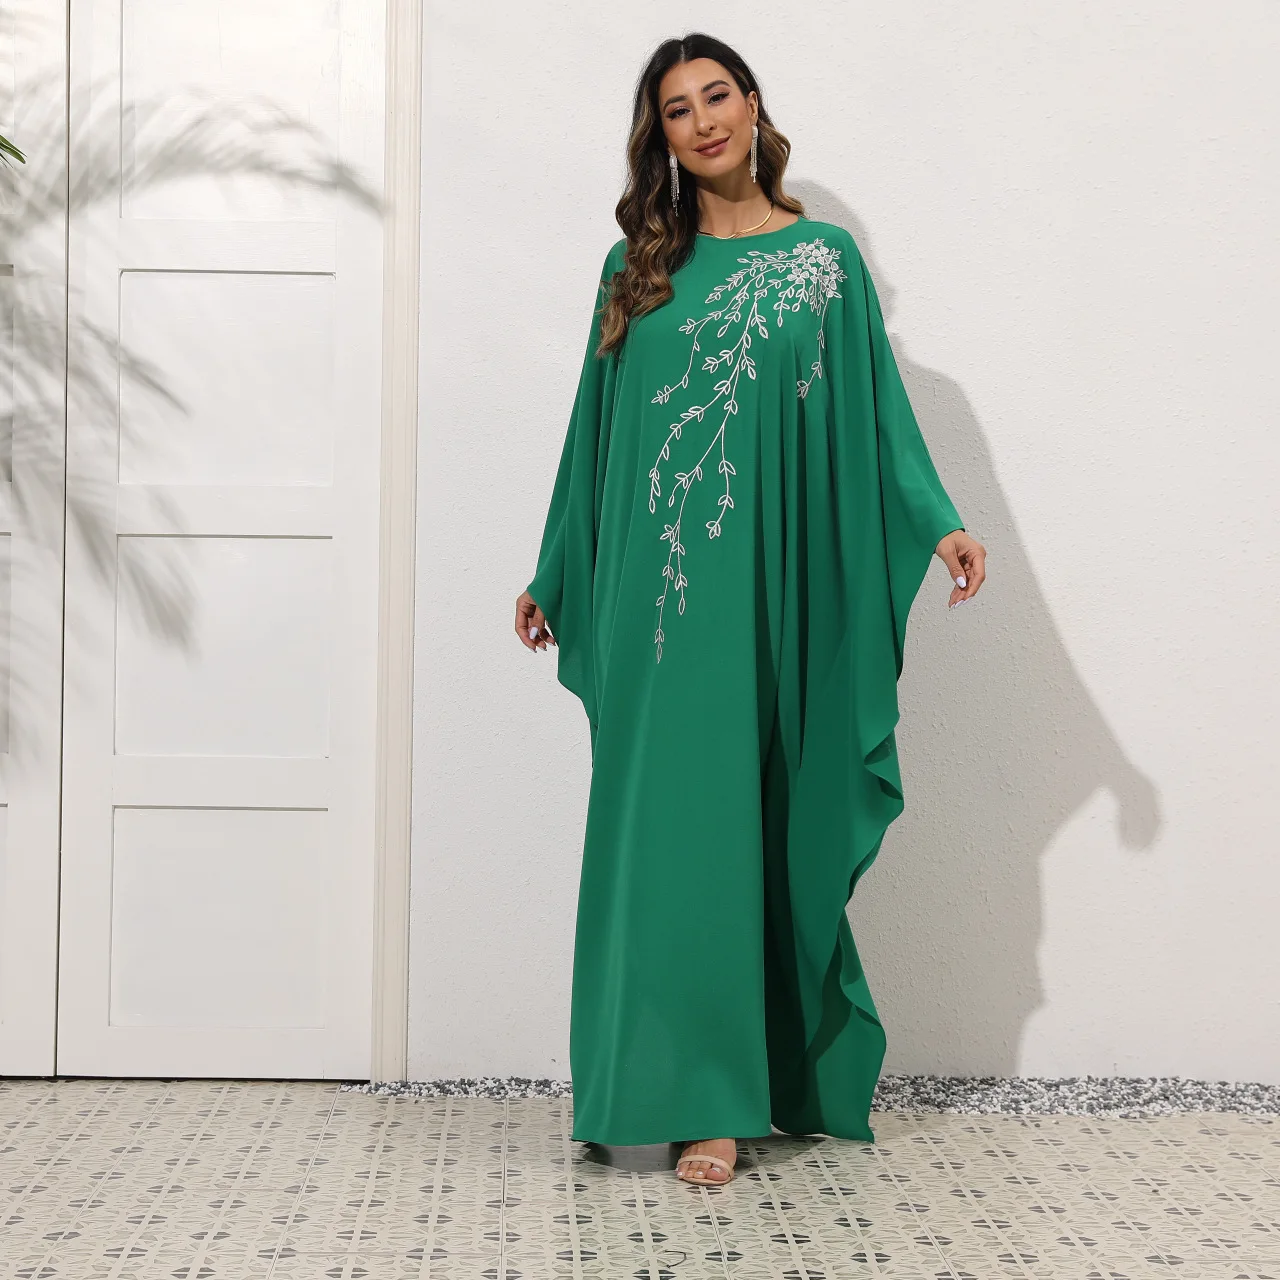 Мусульманское платье, женское зеленое платье, женское арабское элегантное свободное платье с вышивкой и рукавом летучая мышь, длинное плат...